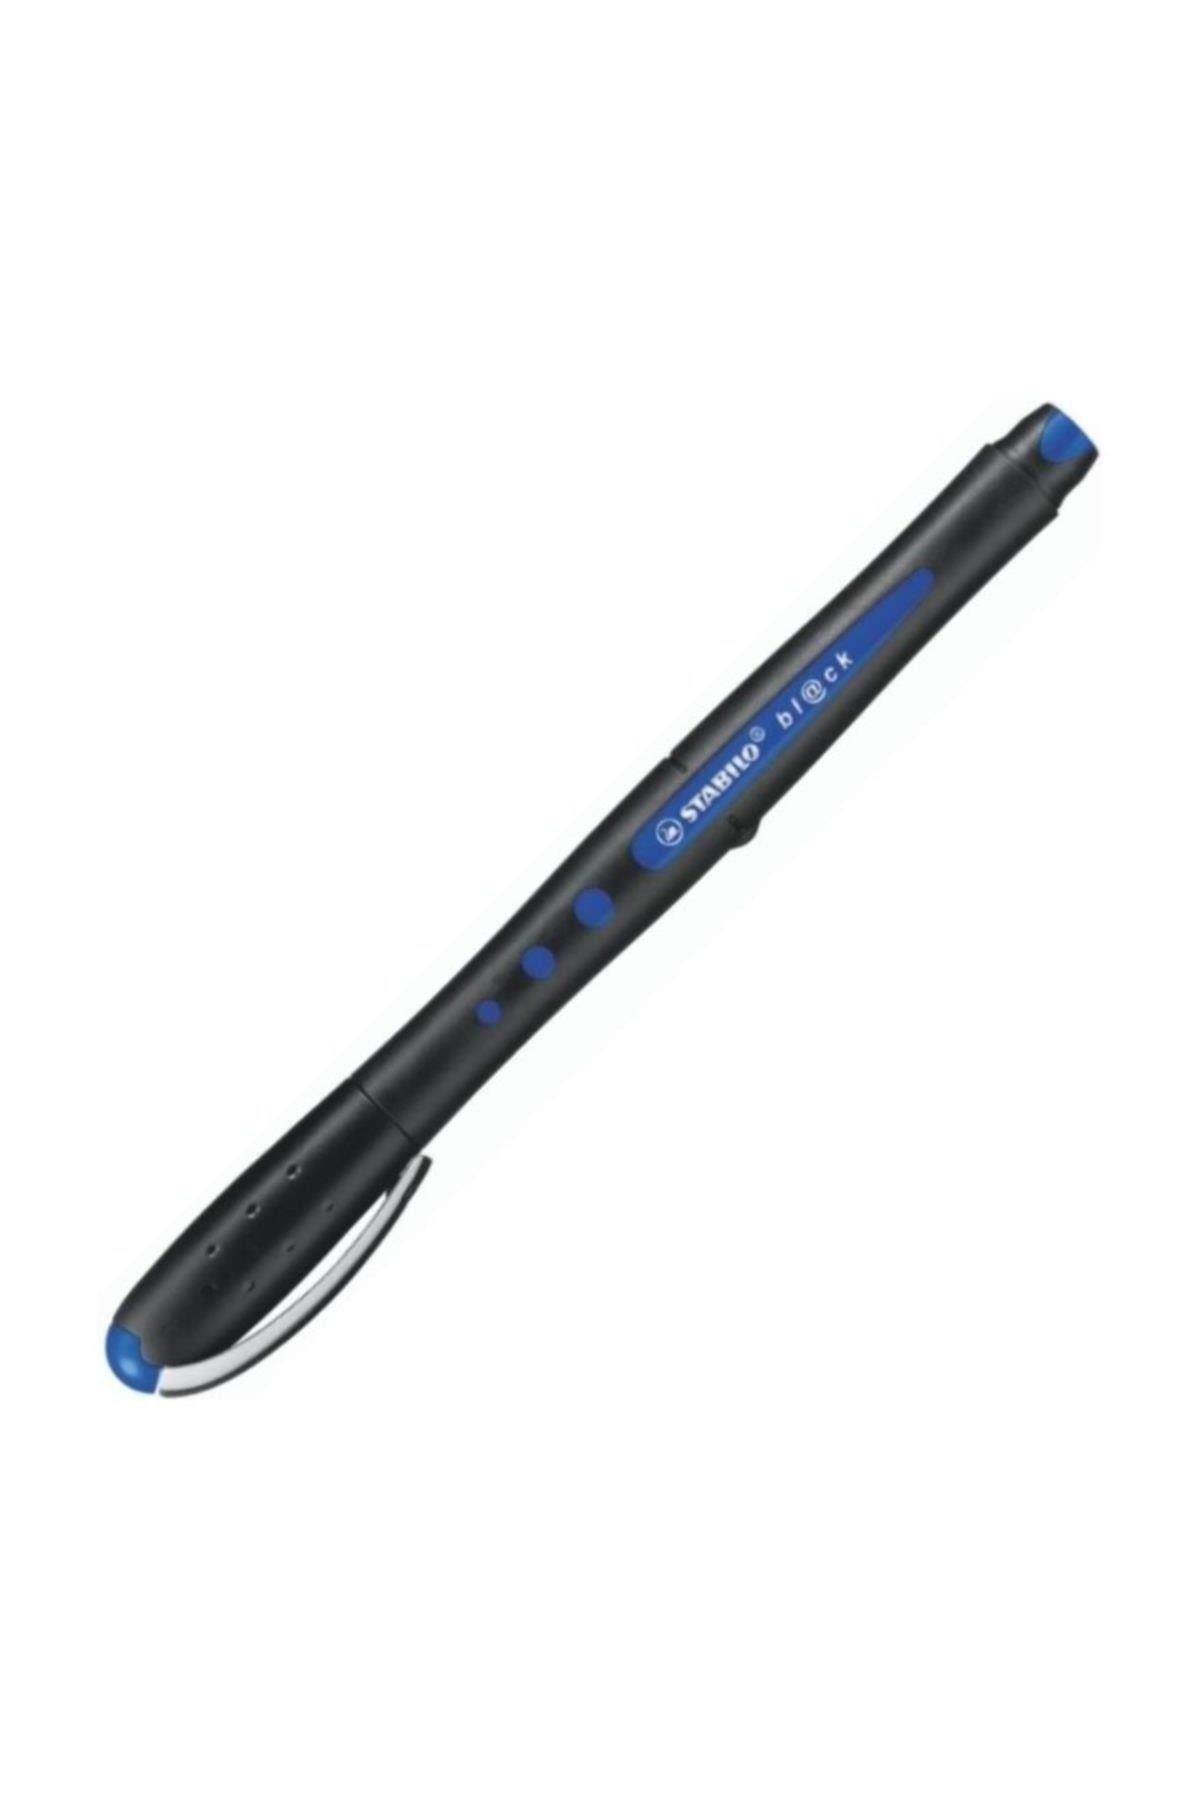 Stabilo Roller Kalem Black Bilye Uç Mavi Medium Uç (10 Lu Paket)